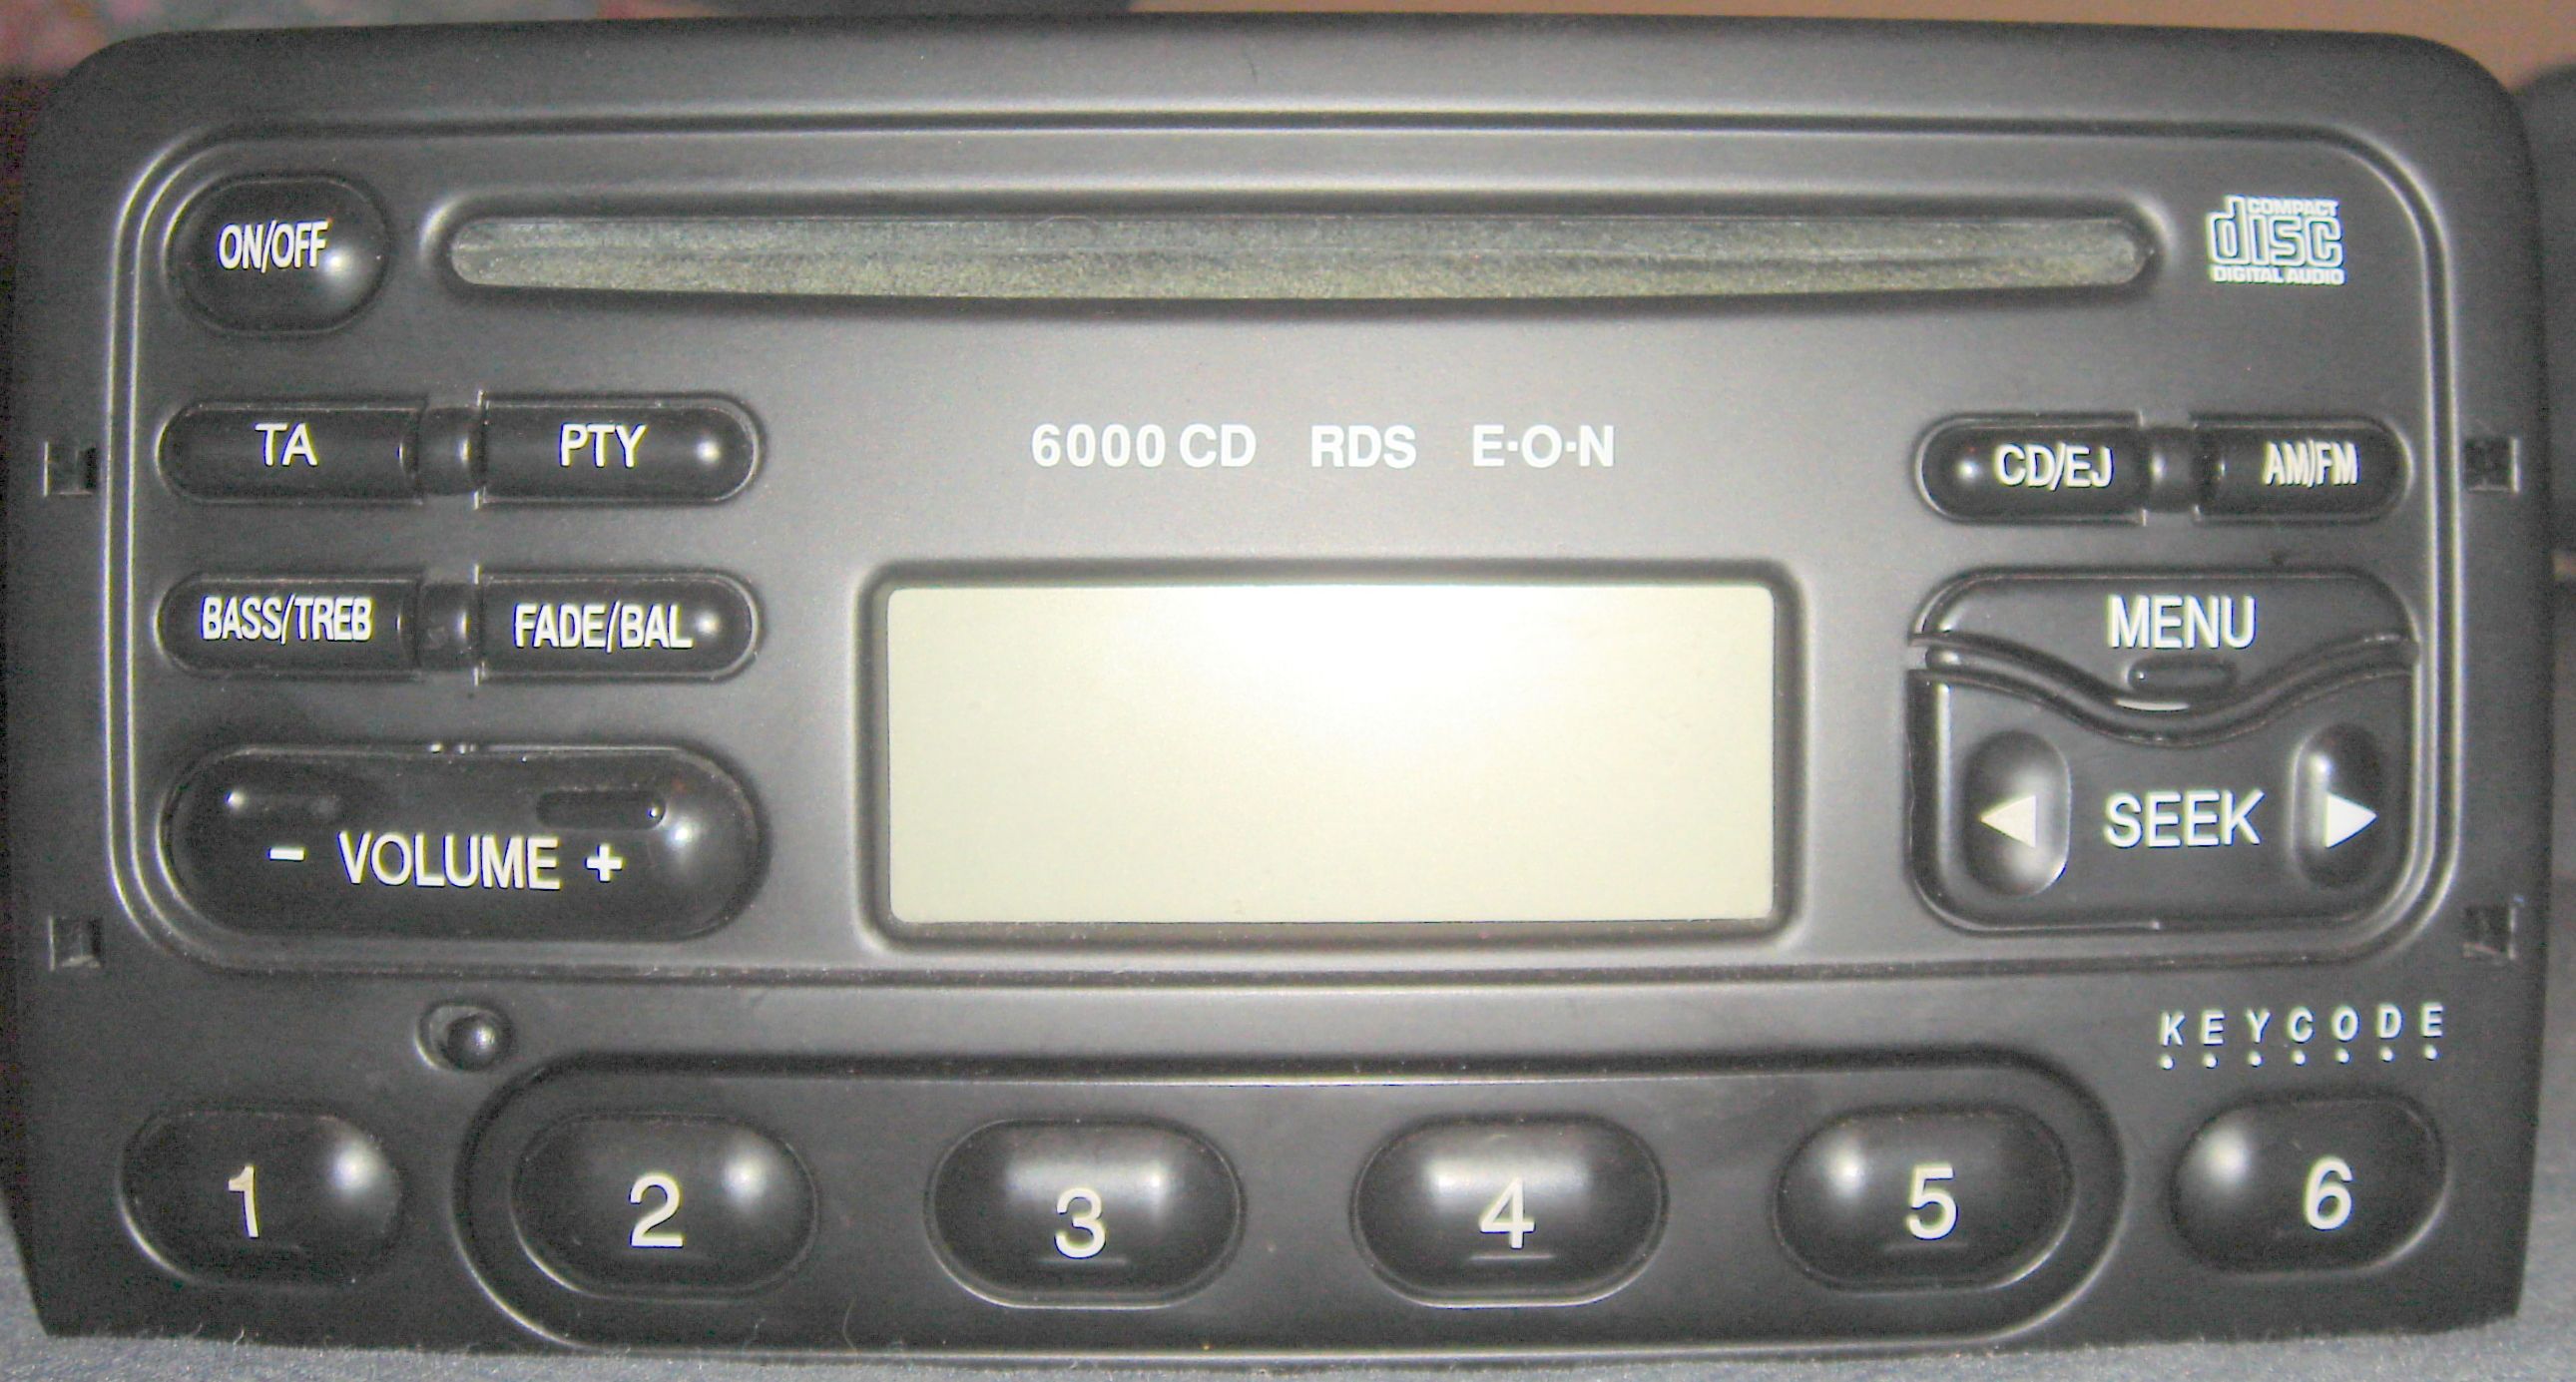 2001 Ford radios